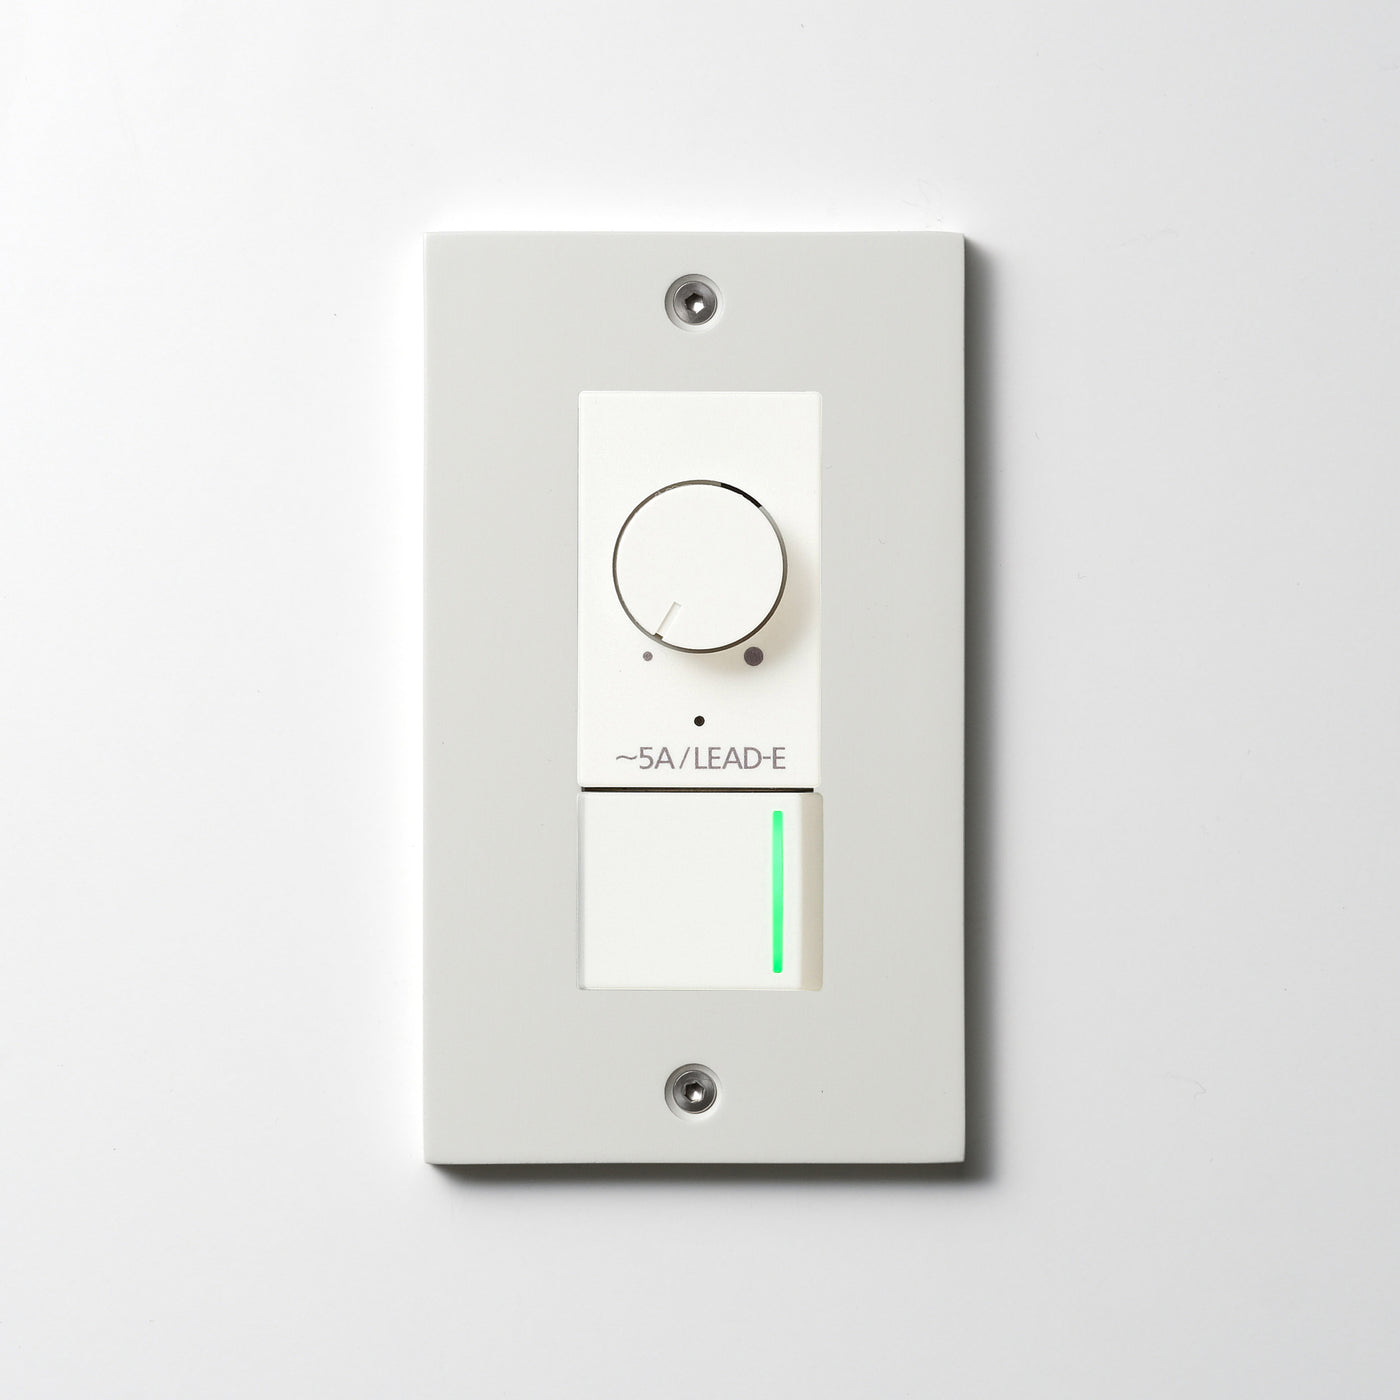 アルミダイキャスト（ホワイト）プレート  <br>+ NK 正位相制御方式ライトコントロール＋片切、3路ガイドランプ（グリーン）スイッチ　 ホワイト